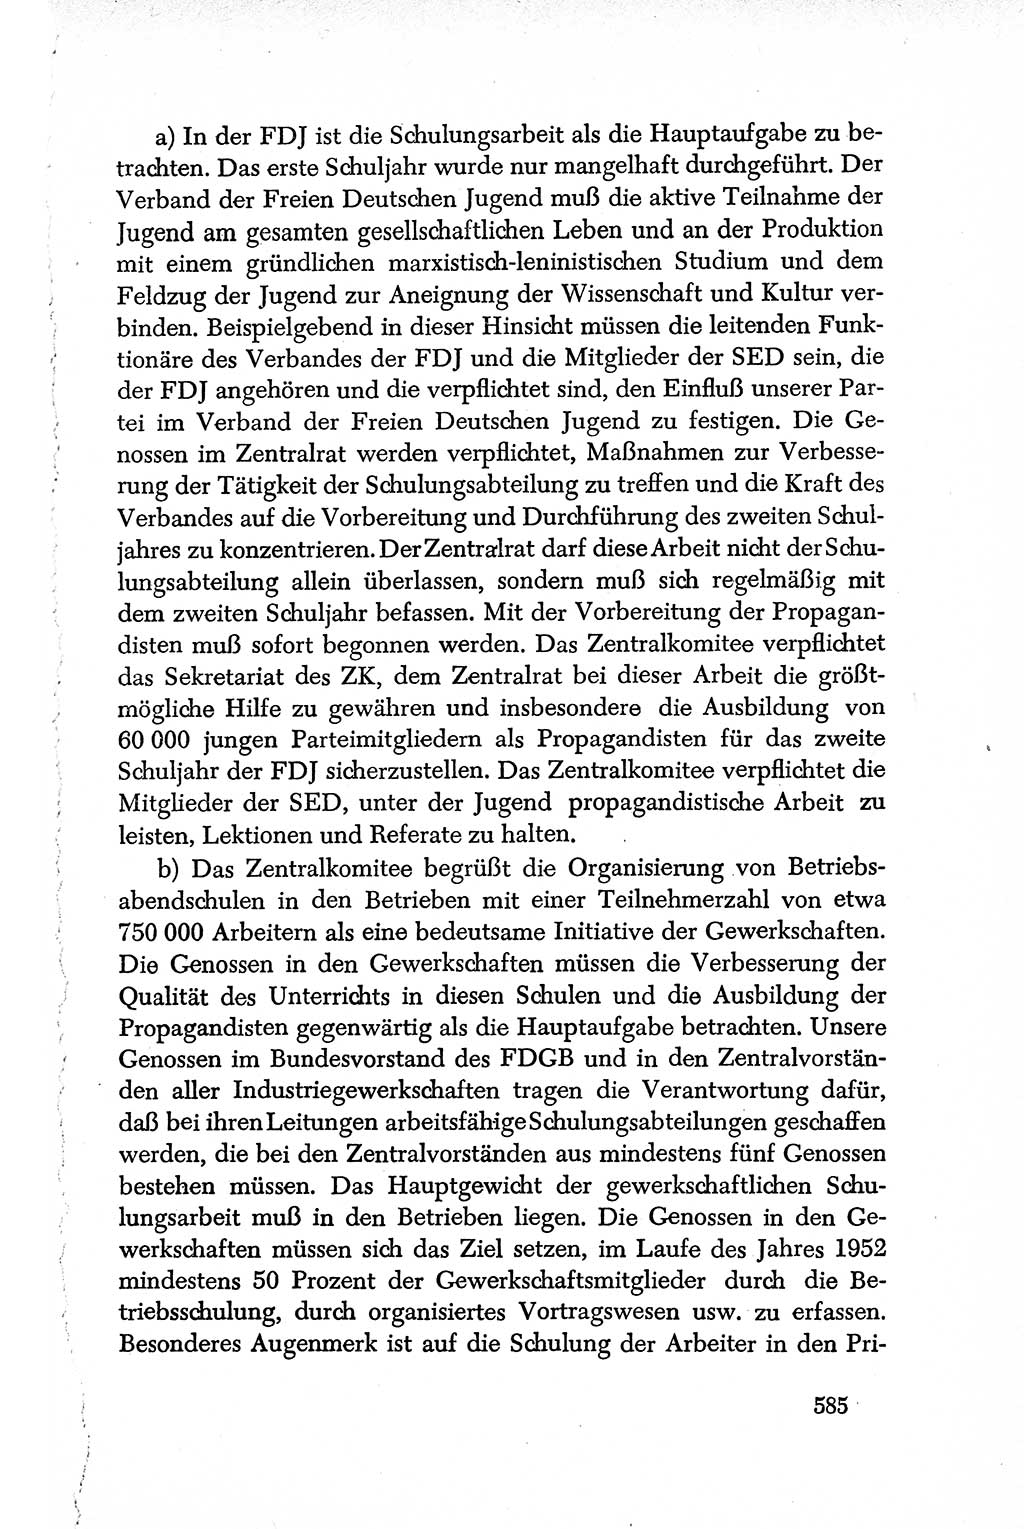 Dokumente der Sozialistischen Einheitspartei Deutschlands (SED) [Deutsche Demokratische Republik (DDR)] 1950-1952, Seite 585 (Dok. SED DDR 1950-1952, S. 585)